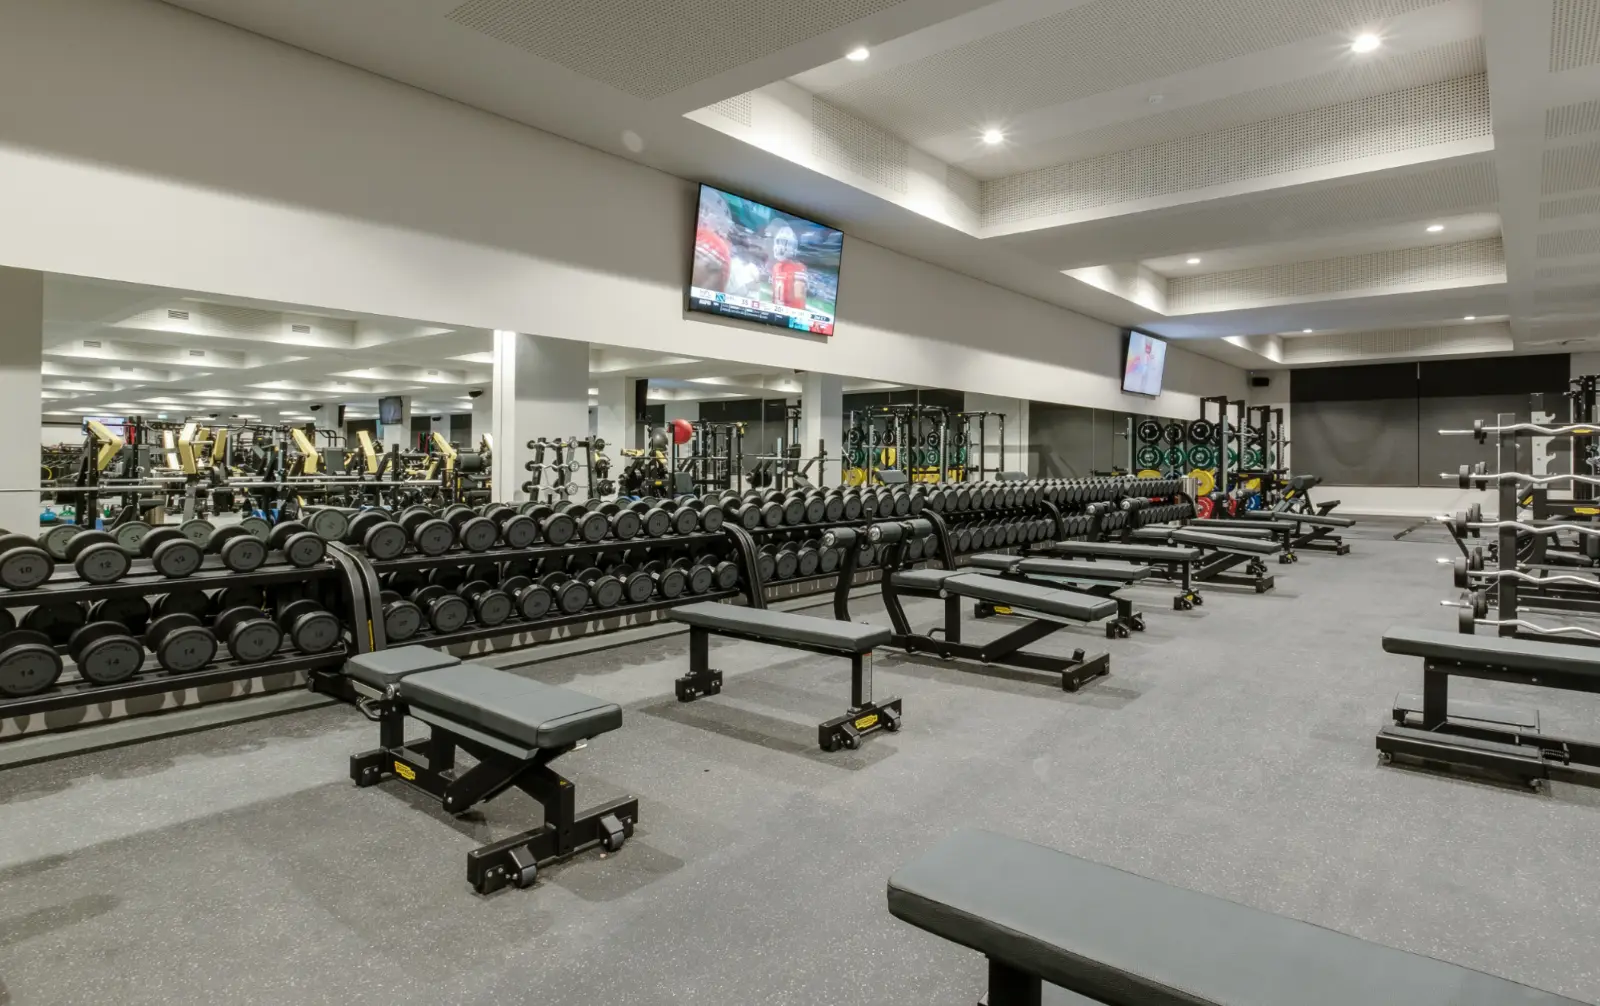 Craigie Leisure Centres - Gym weights area